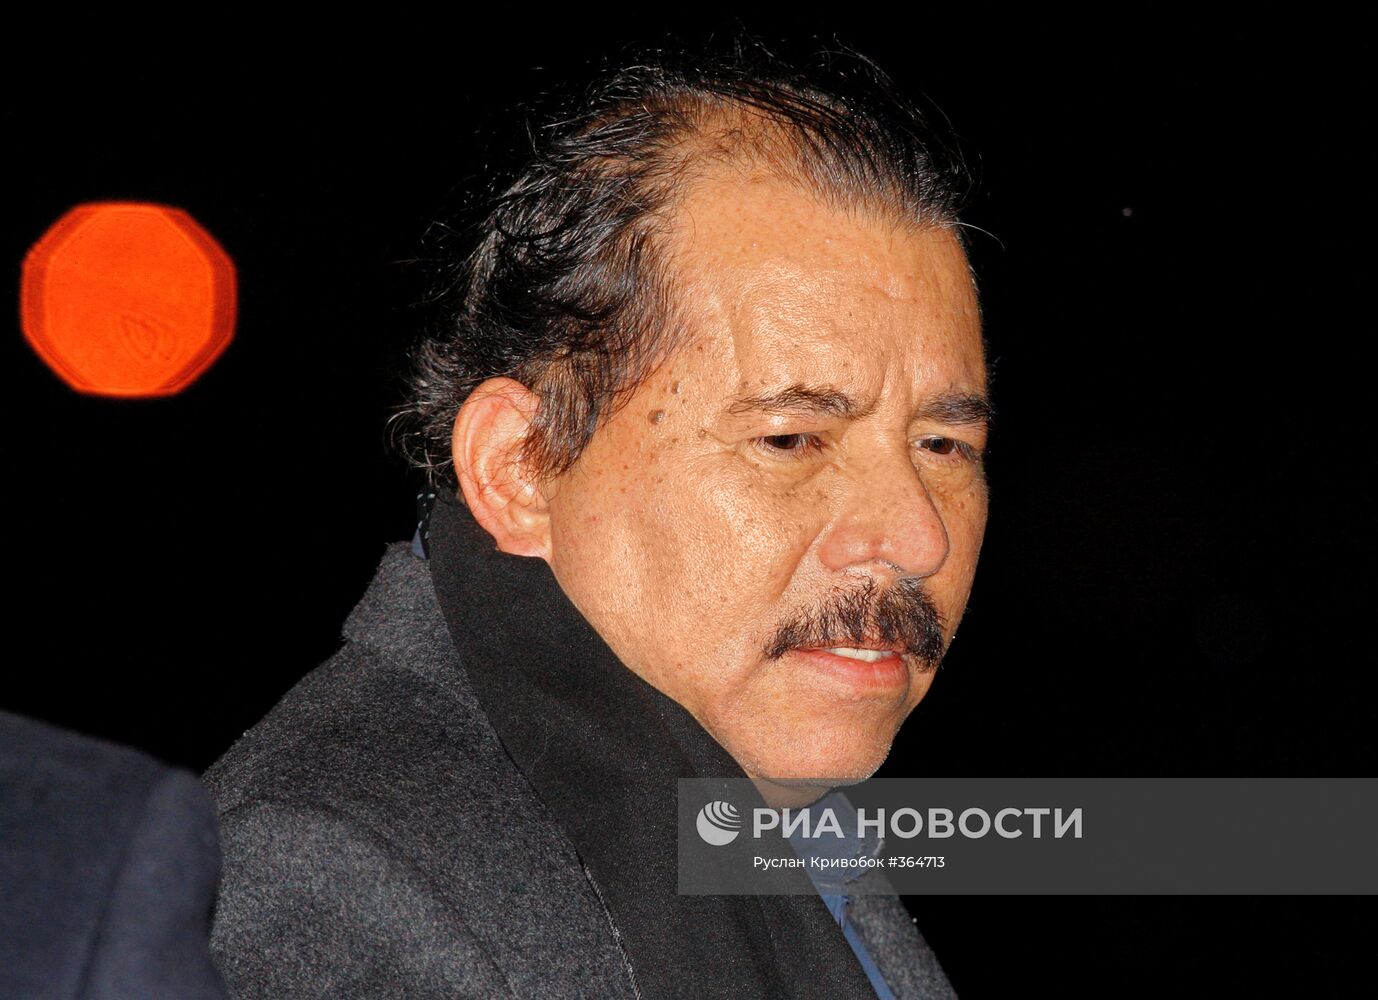 Президент Никарагуа Даниэль Ортега прибыл в Москву